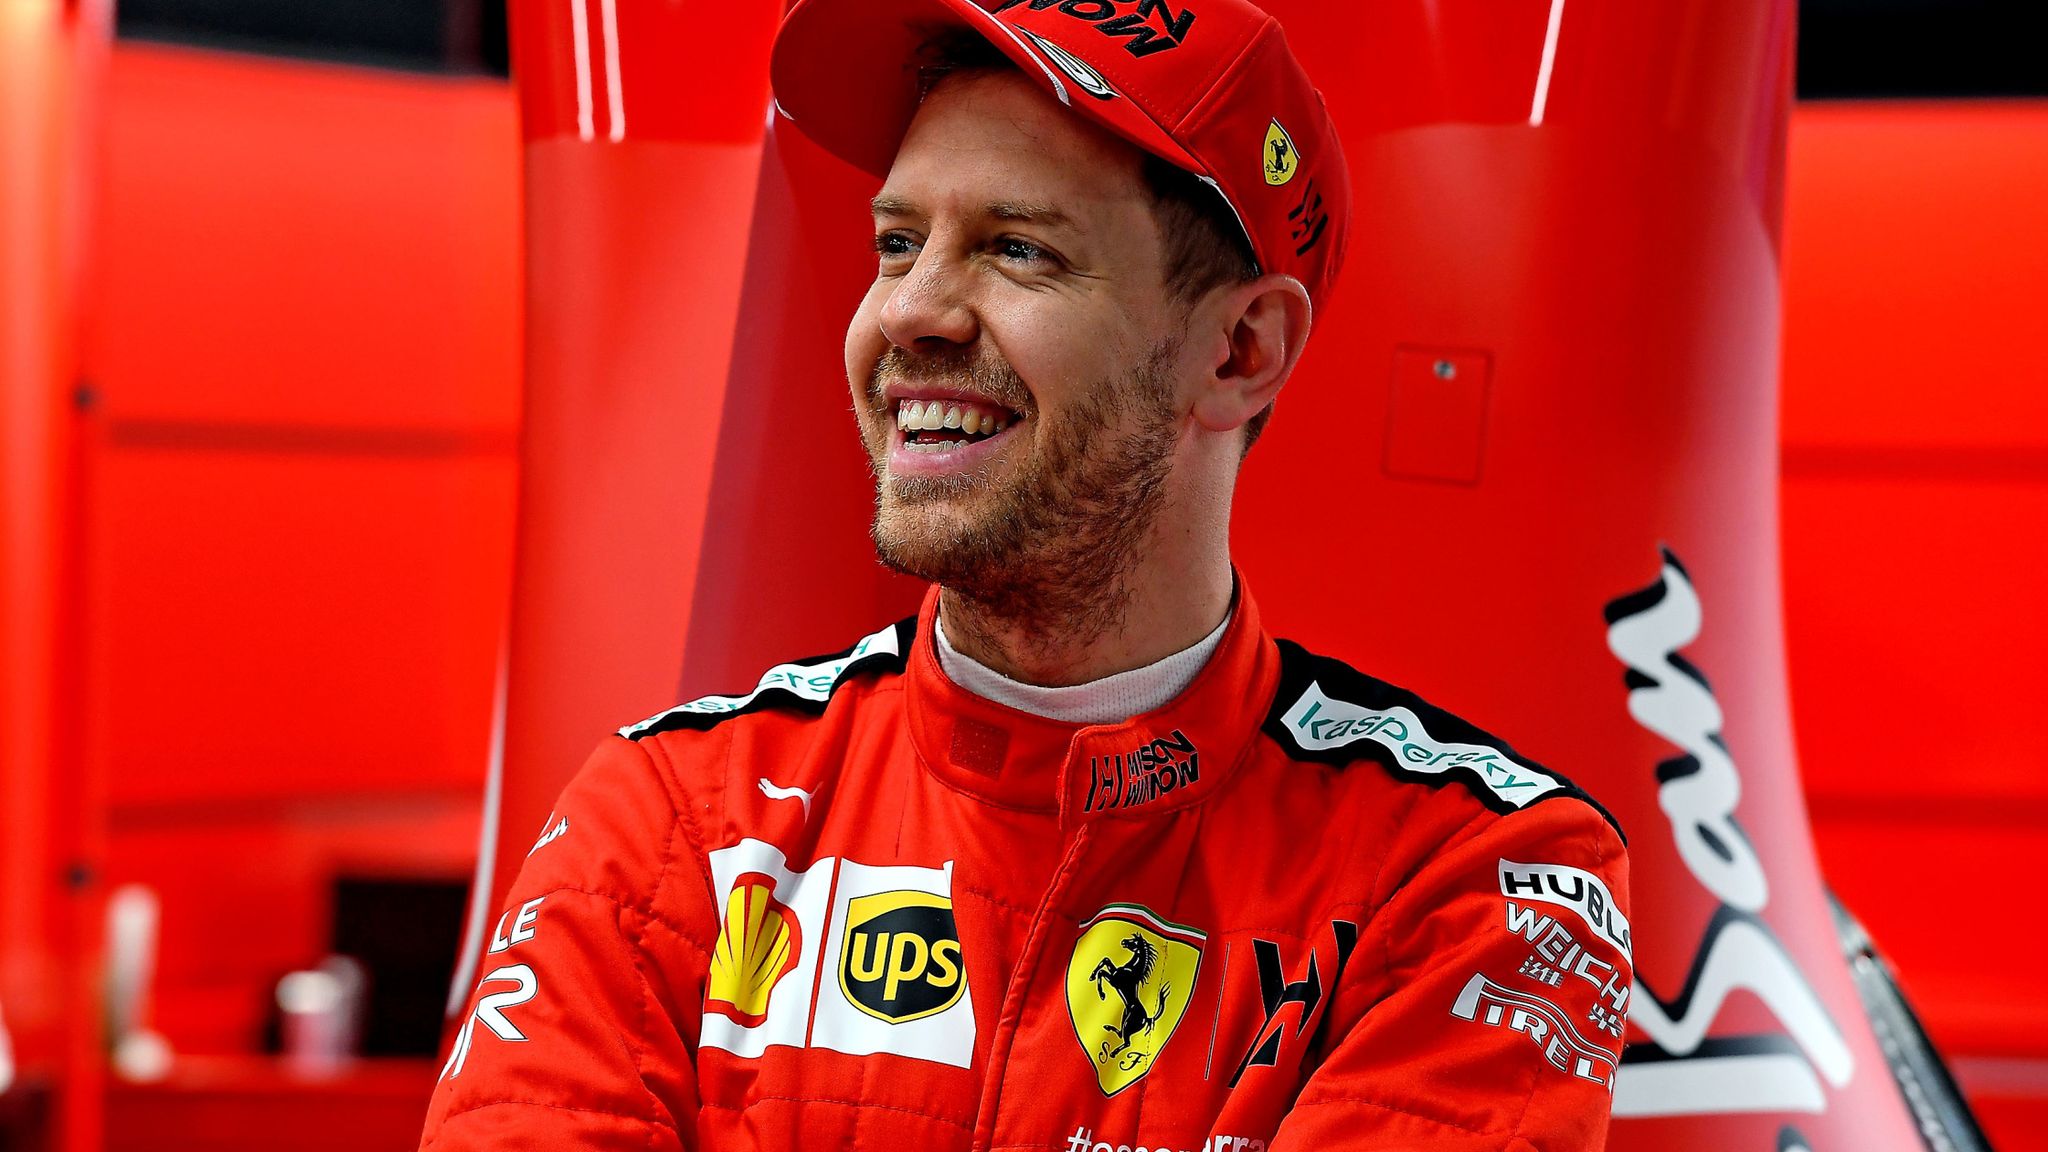 Gjiganti i Formula1, Vettel tregon se kur do të pensionohet